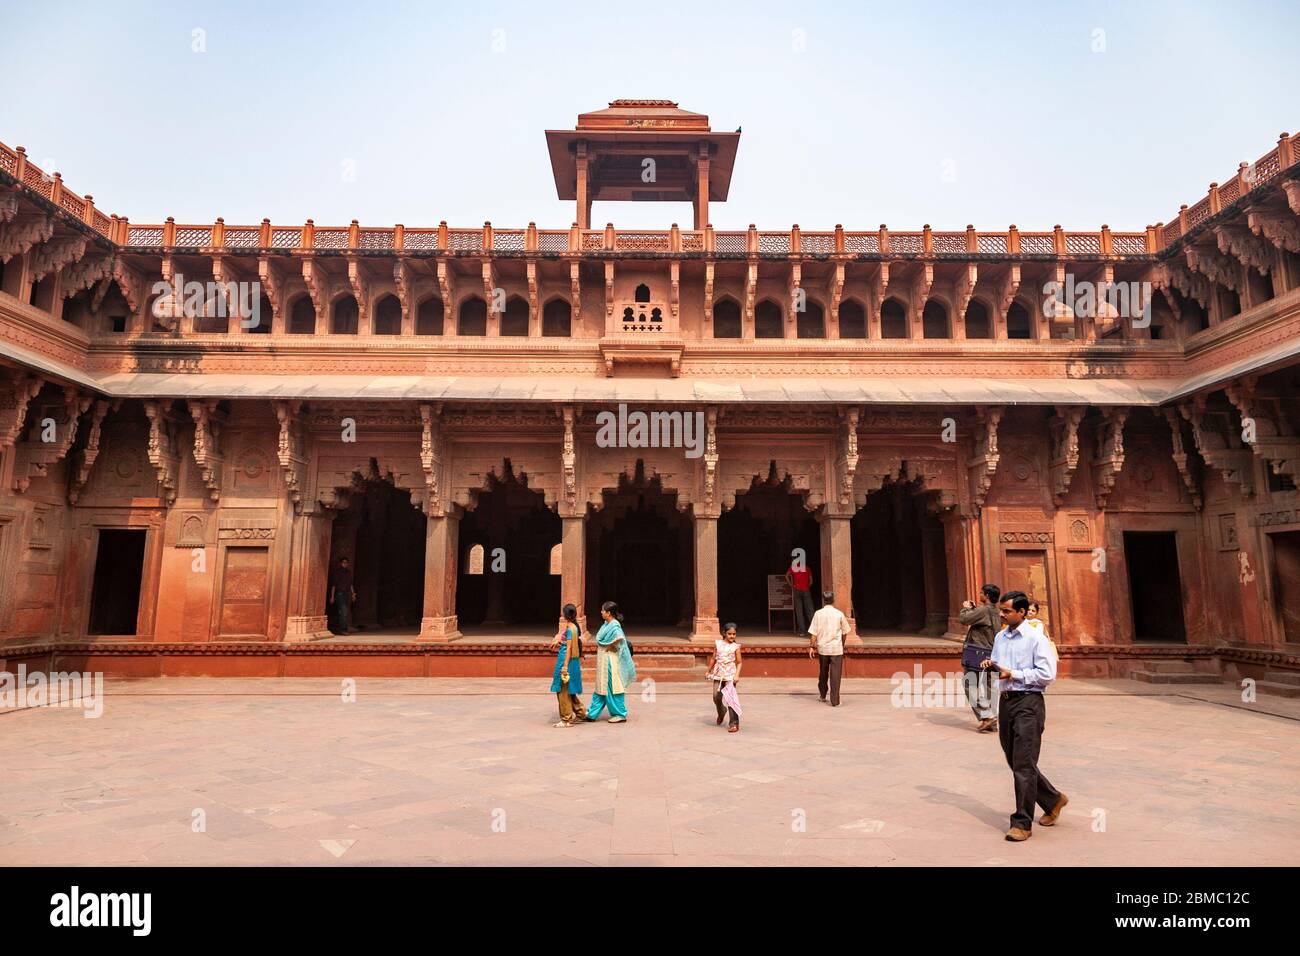 Ein Innenhof von Agra Fort, Uttar Pradesh, Indien Stockfoto